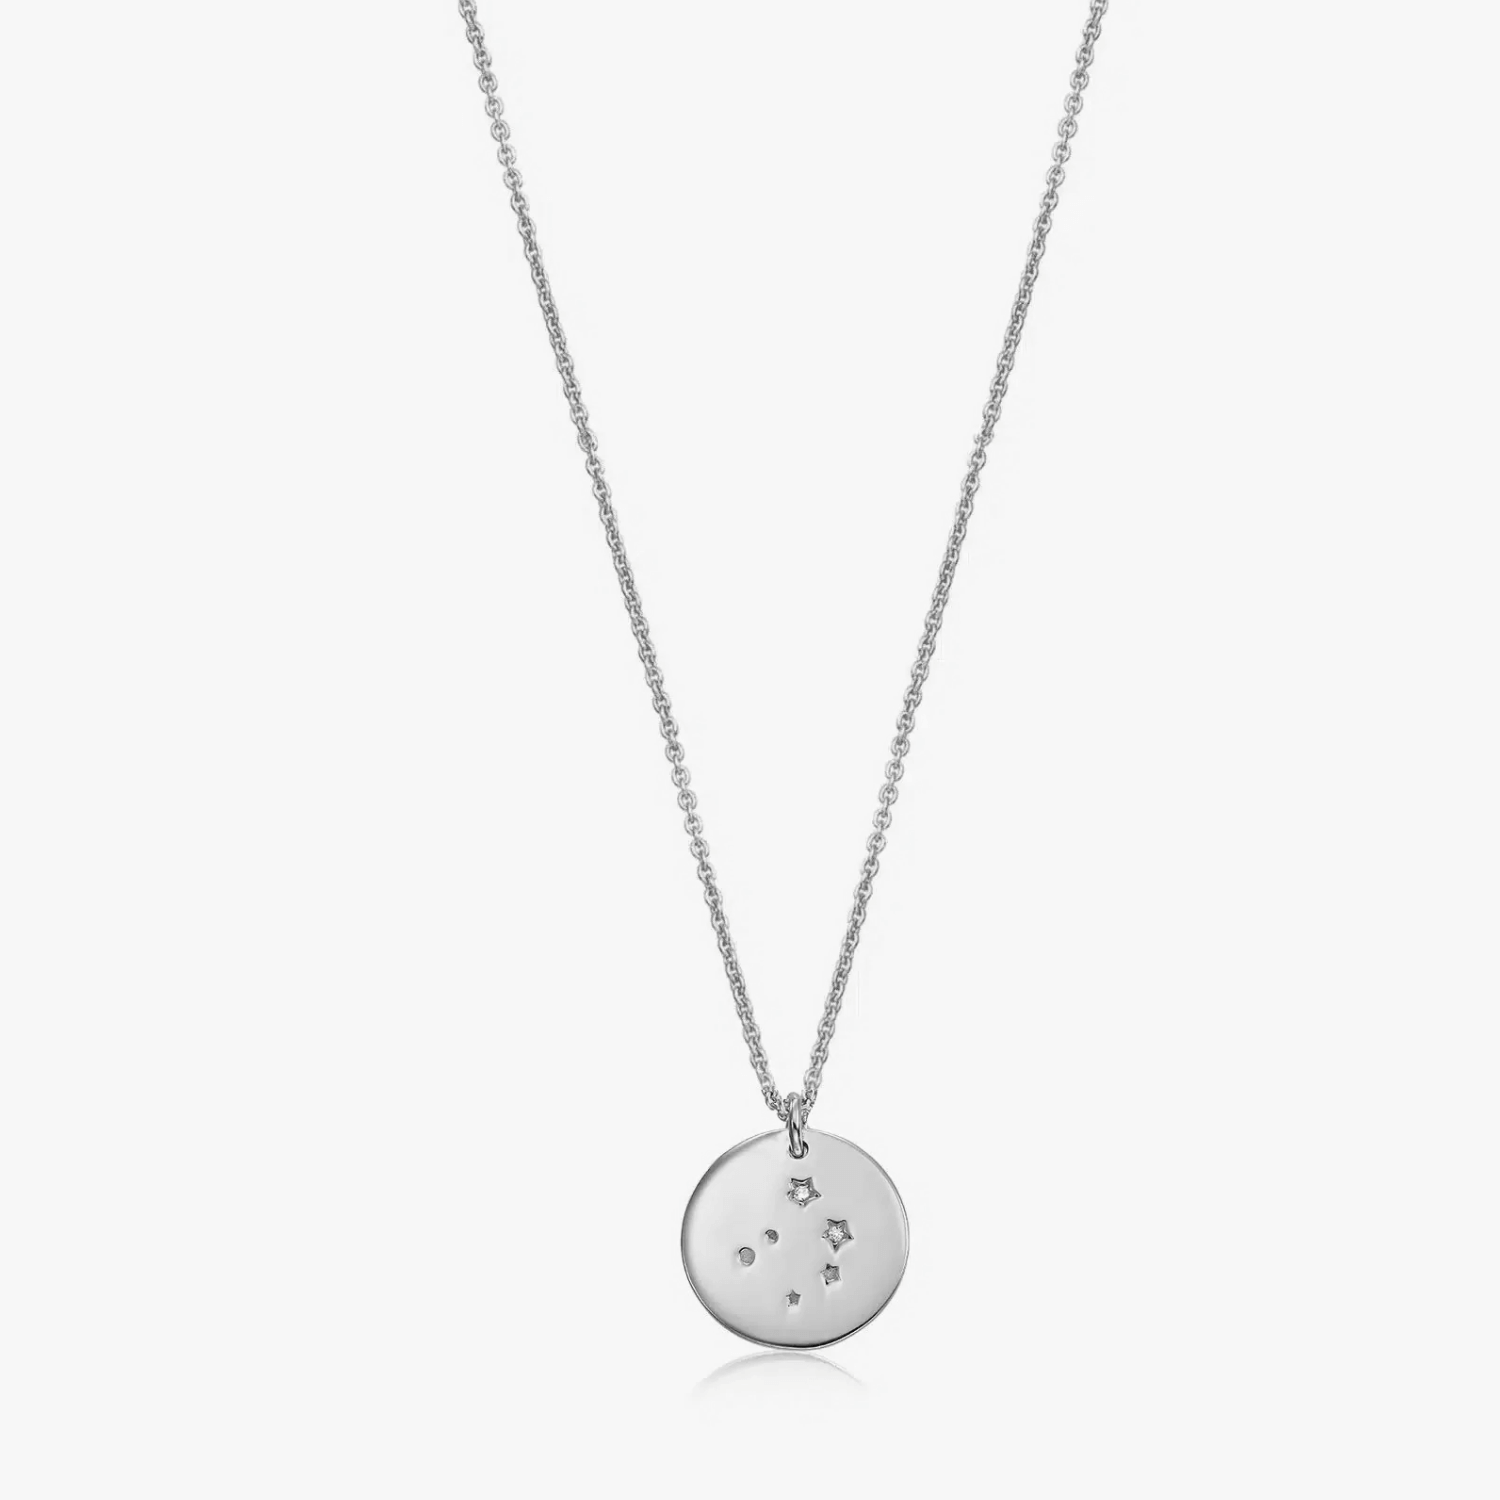 Silver Zodiac Silver Necklace - Libra